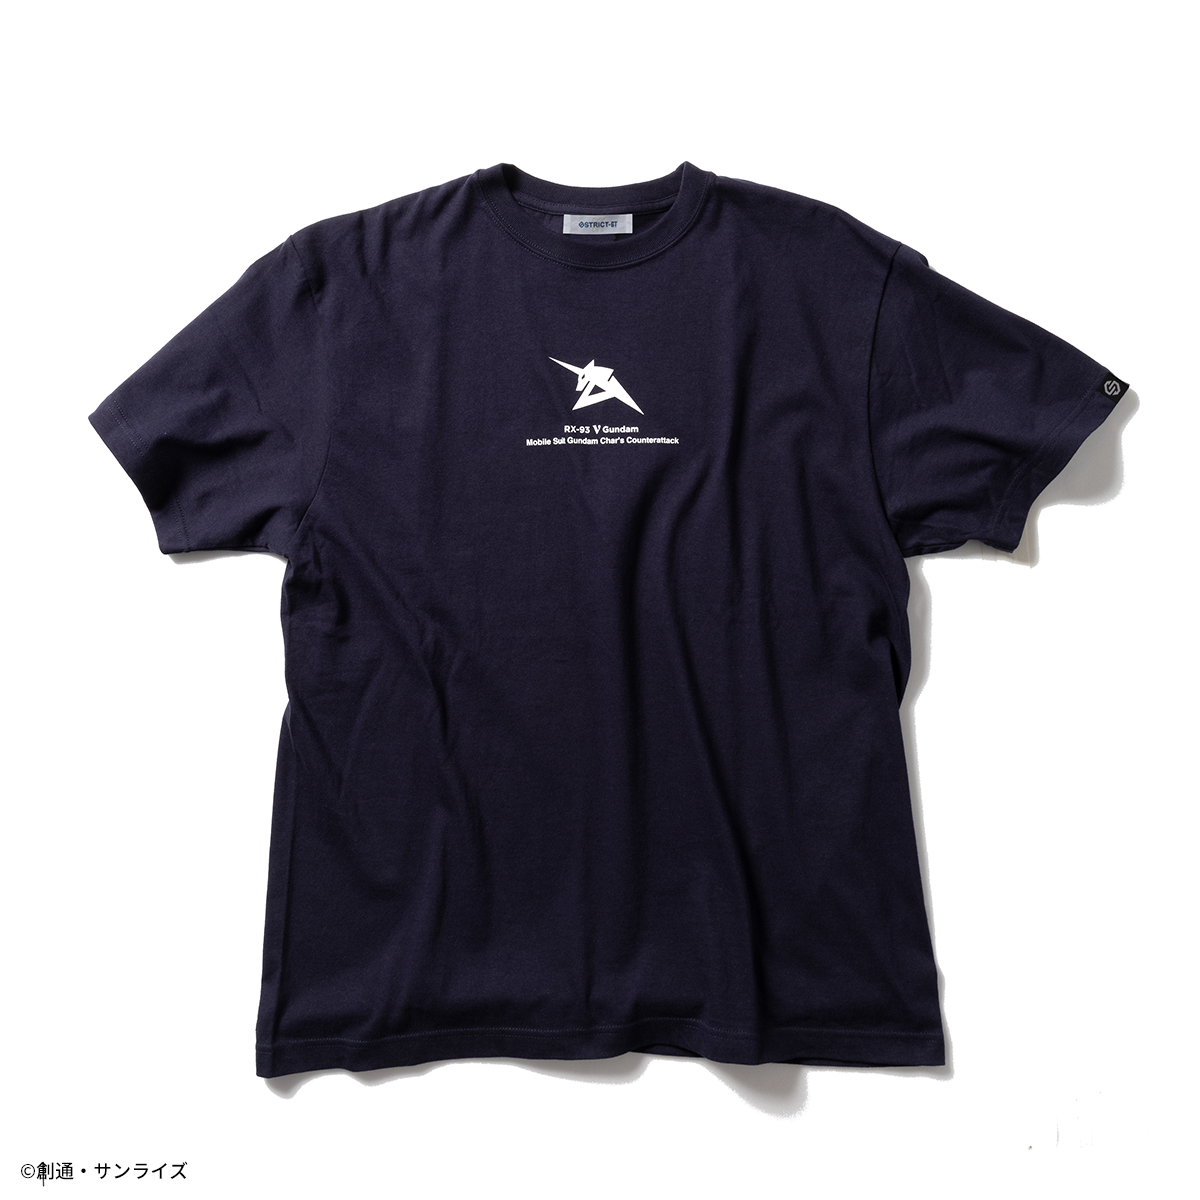 『機動戦士ガンダム 逆襲のシャア 』23SS新作アパレルコレクション Tシャツ、ポロシャツなど7アイテムを展開！